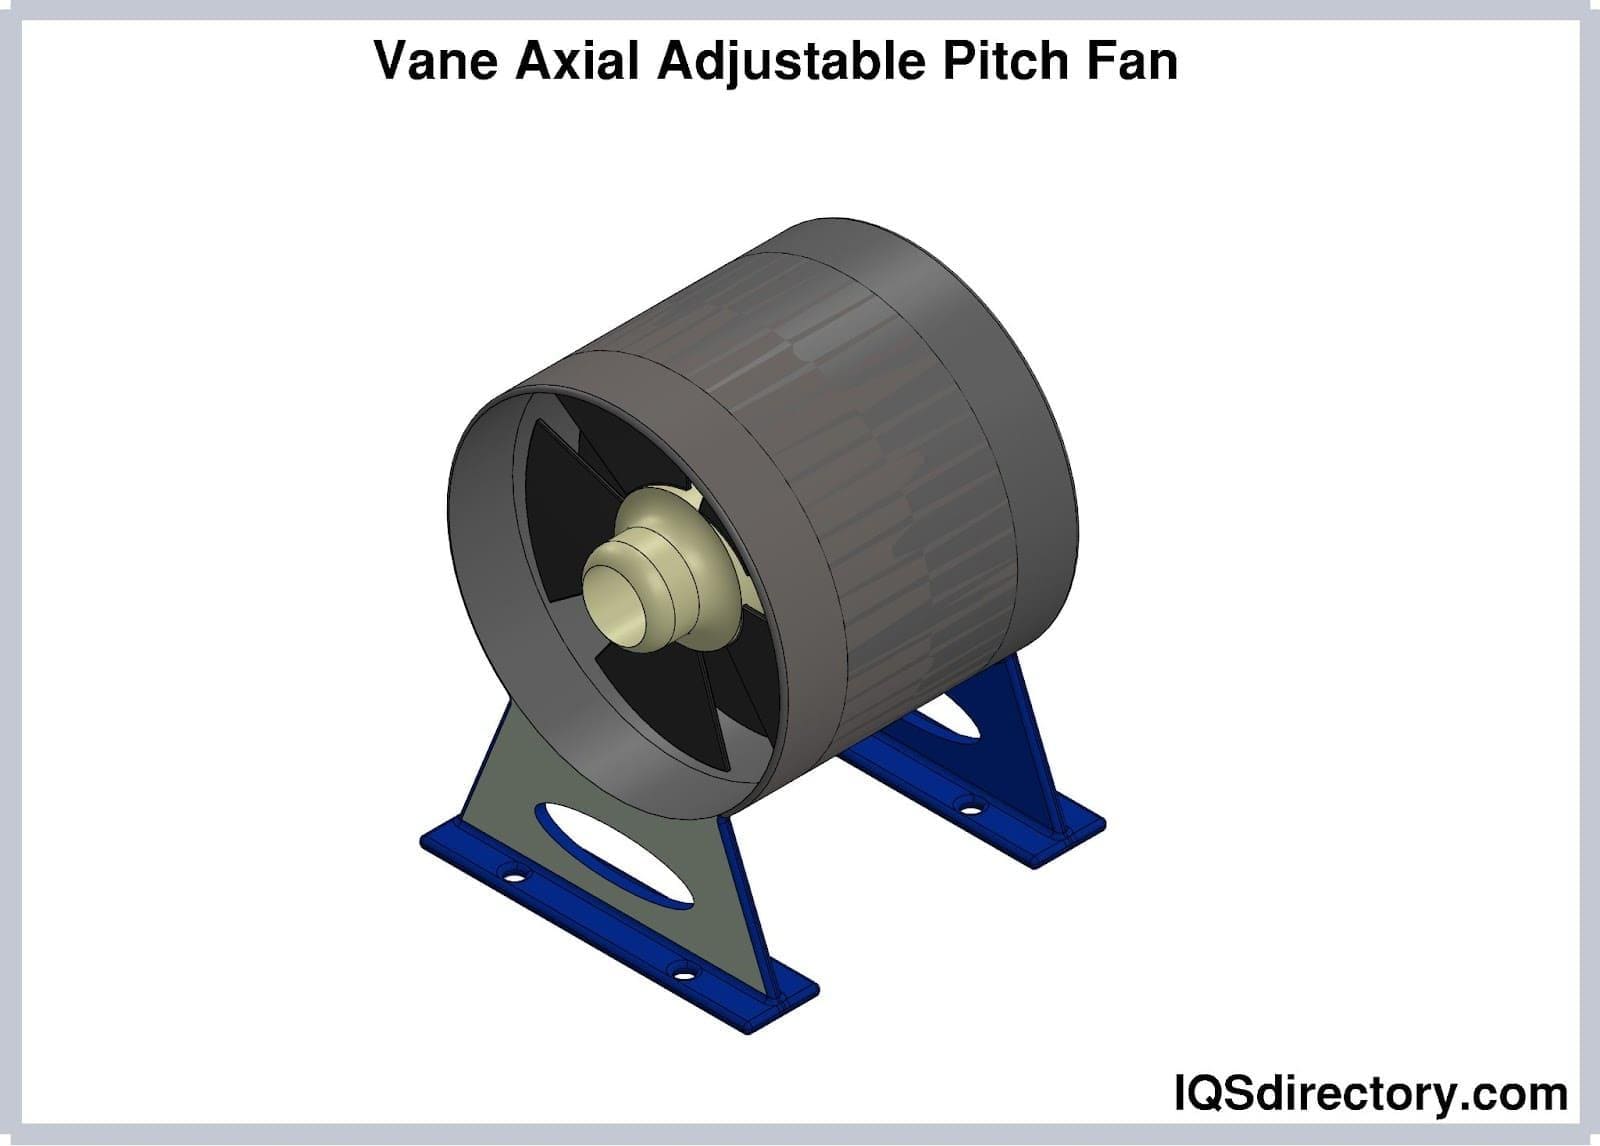 van axial adjustable pitch fan